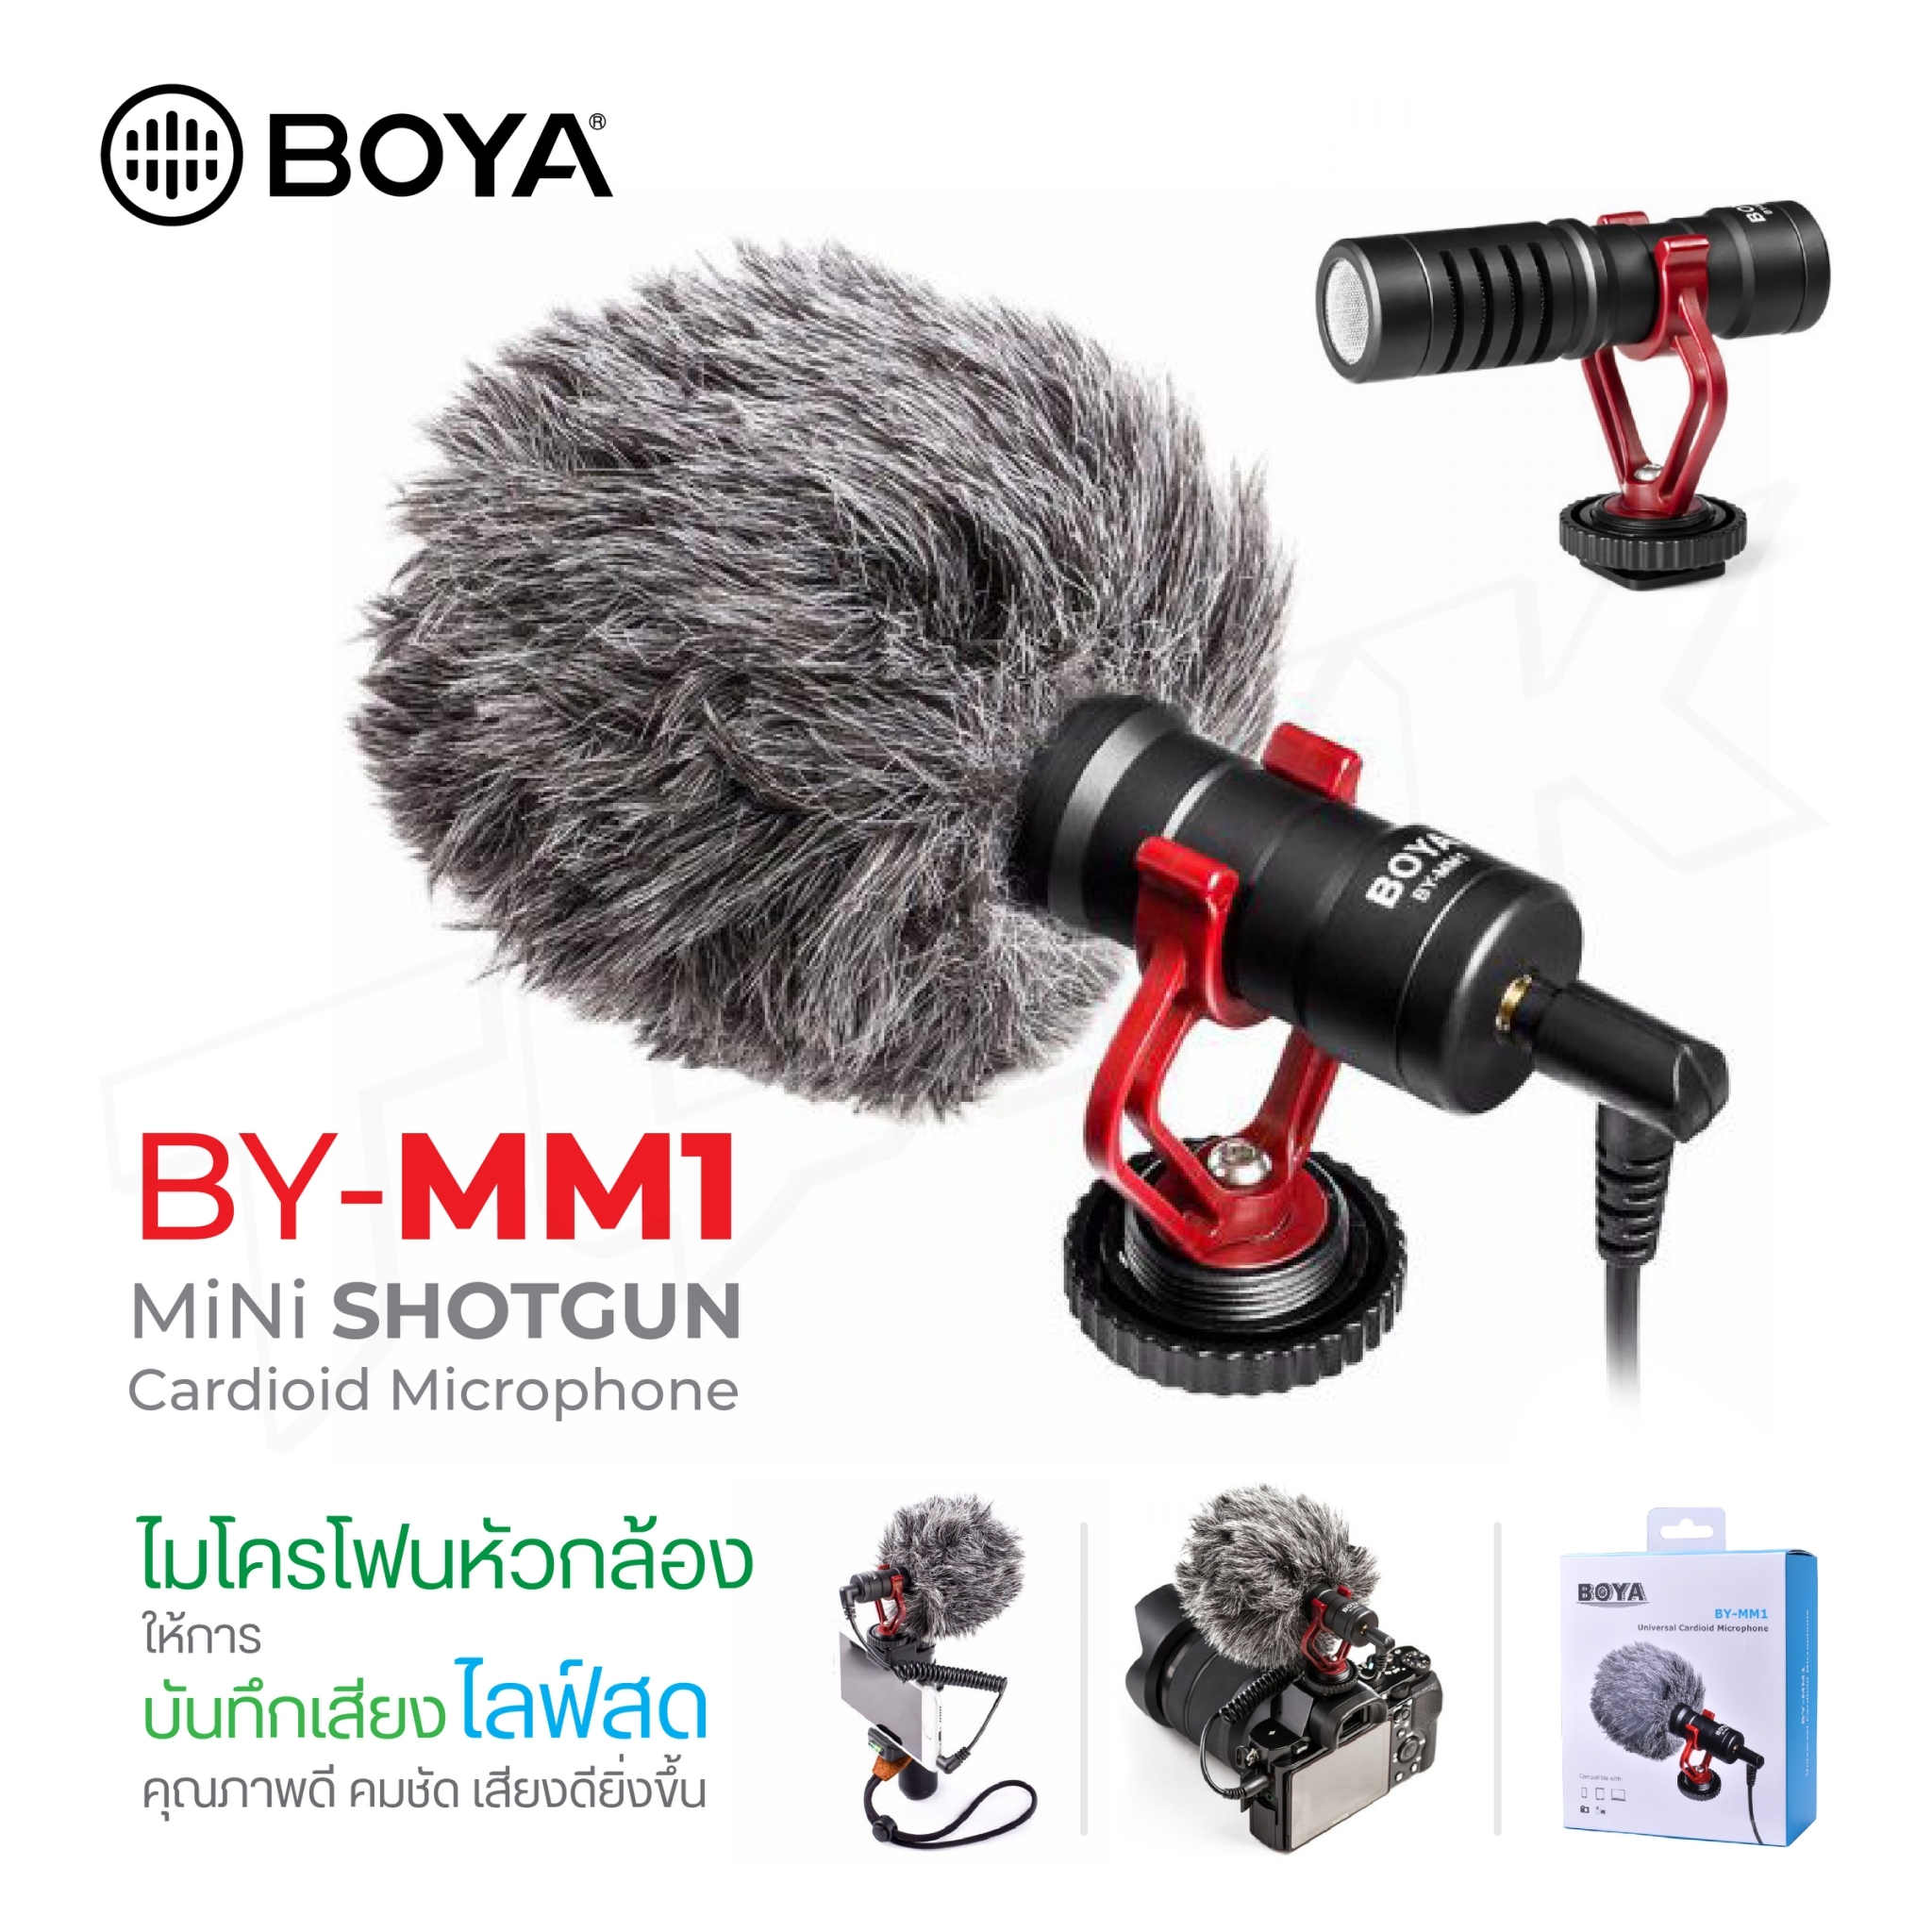 ไมค์อัดเสียง BOYA ไมโครโฟน รุ่น BY-MM1